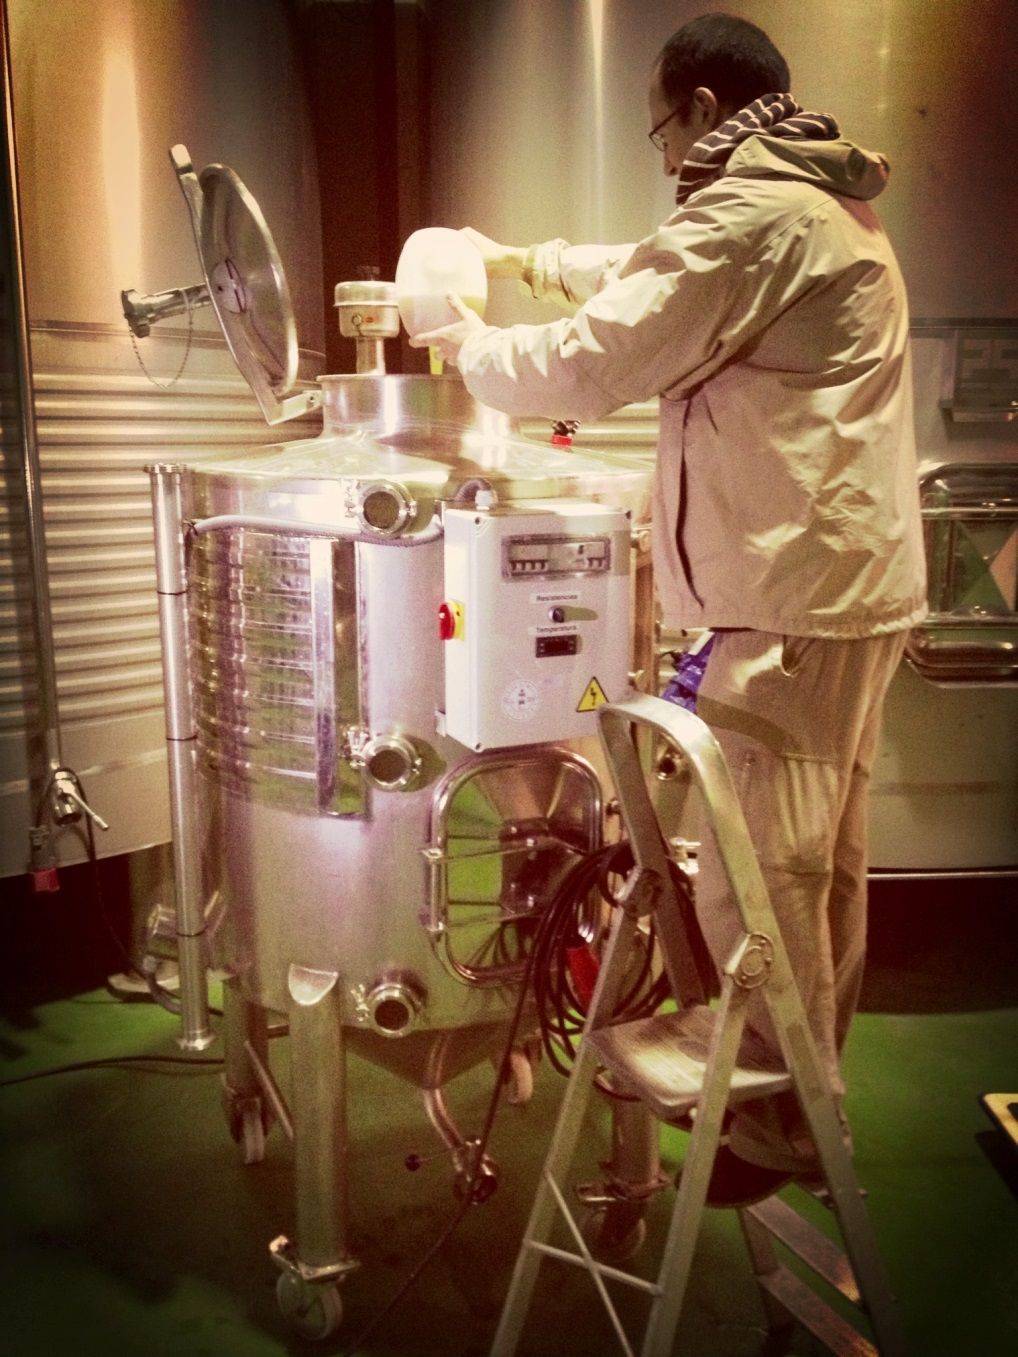 Preparación de la levadura en un fermentador diseñado por el grupo enotecUPM y Bodegas Comenge. Fuente: UPM.